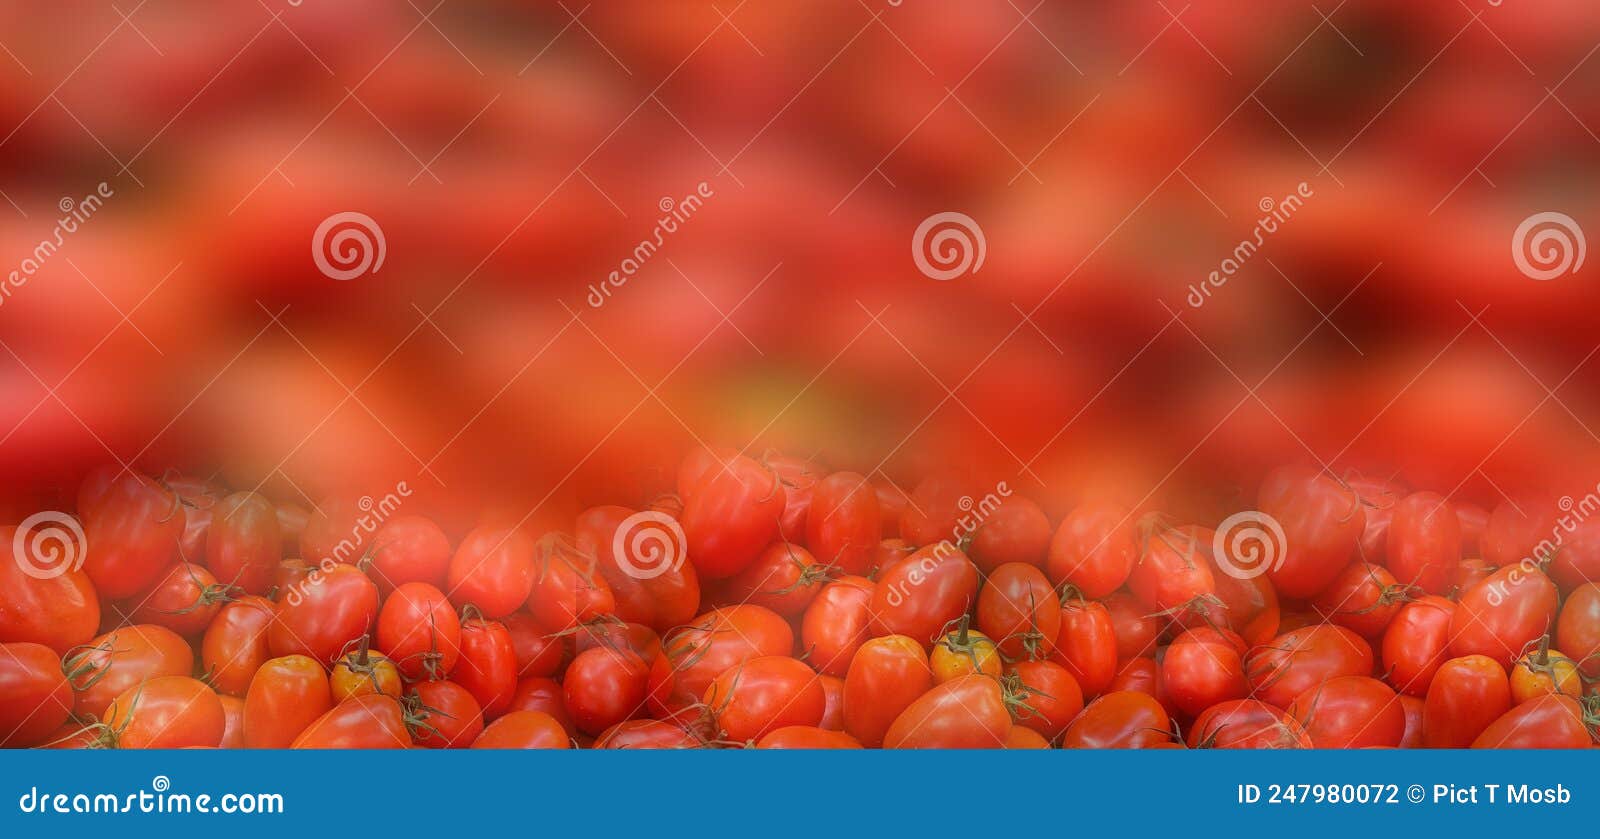 fresh tomate